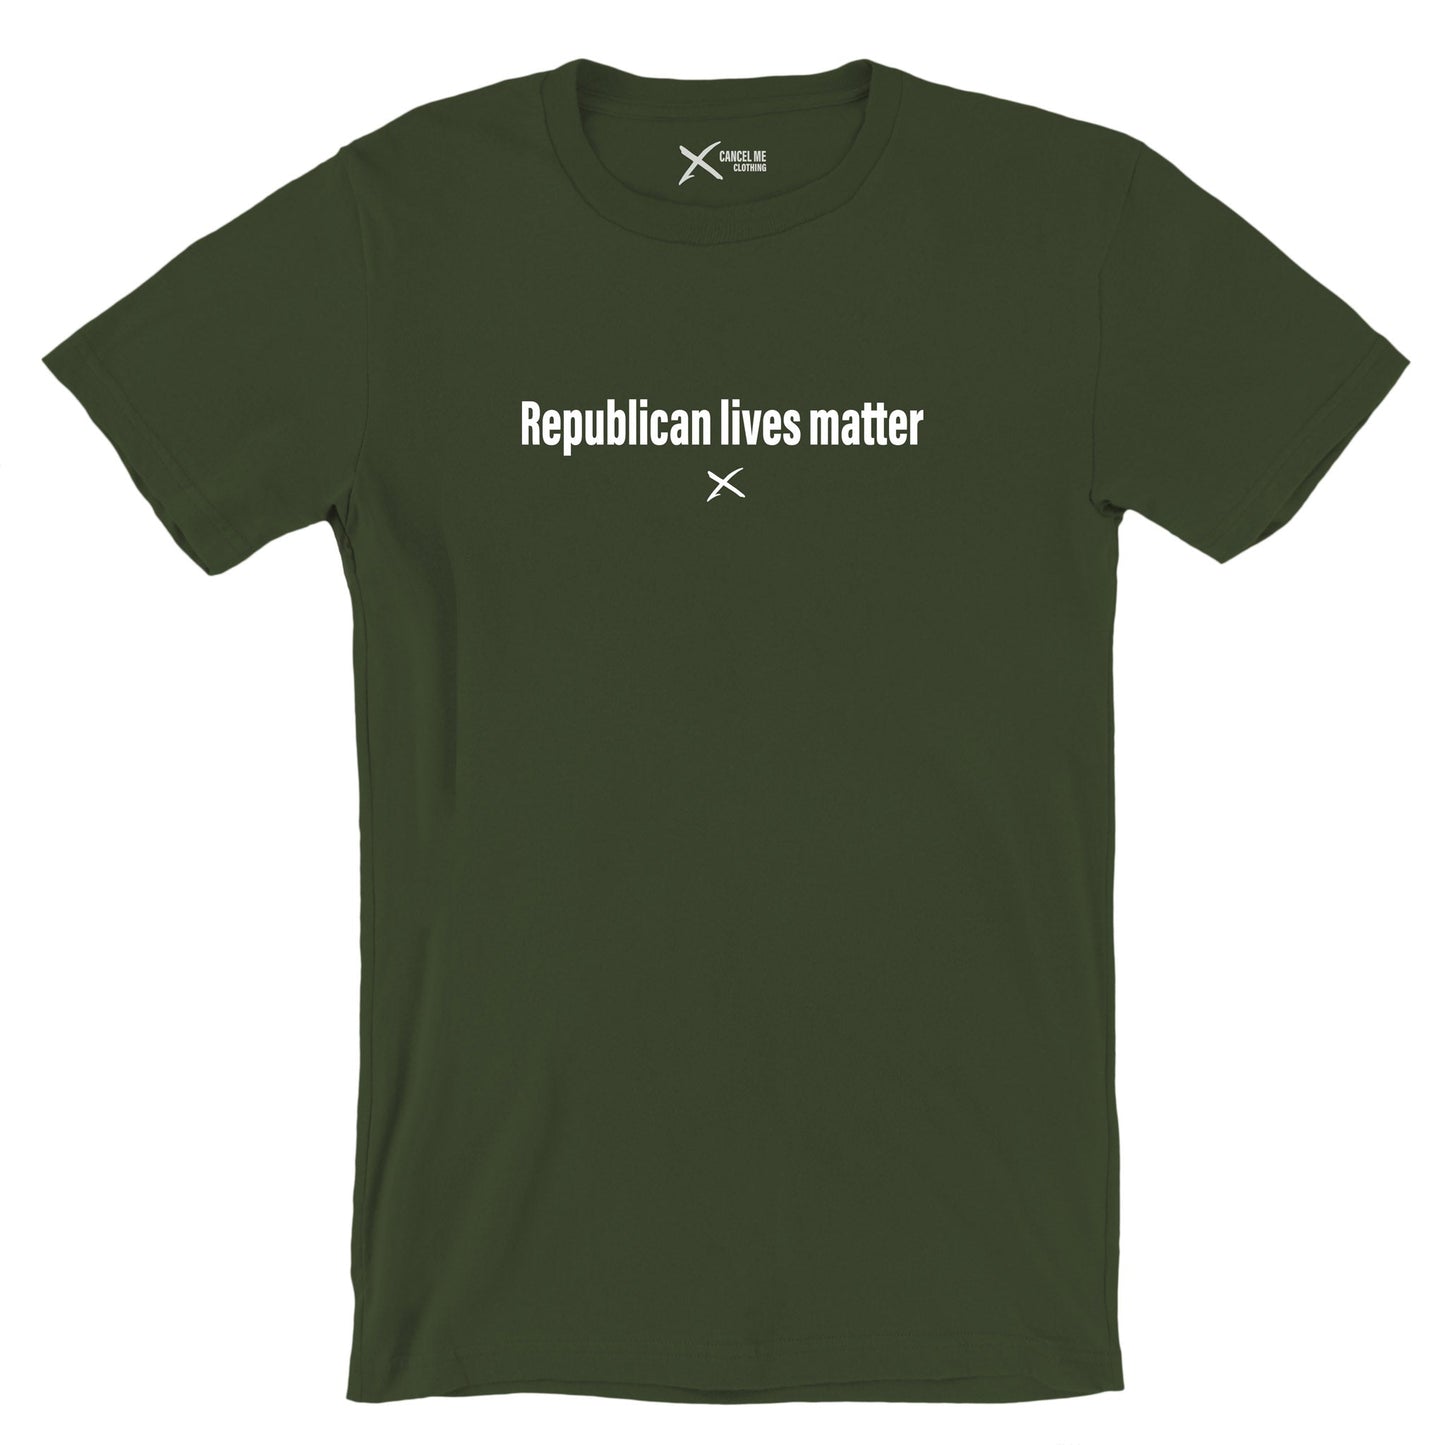 Republican lives matter - Shirt